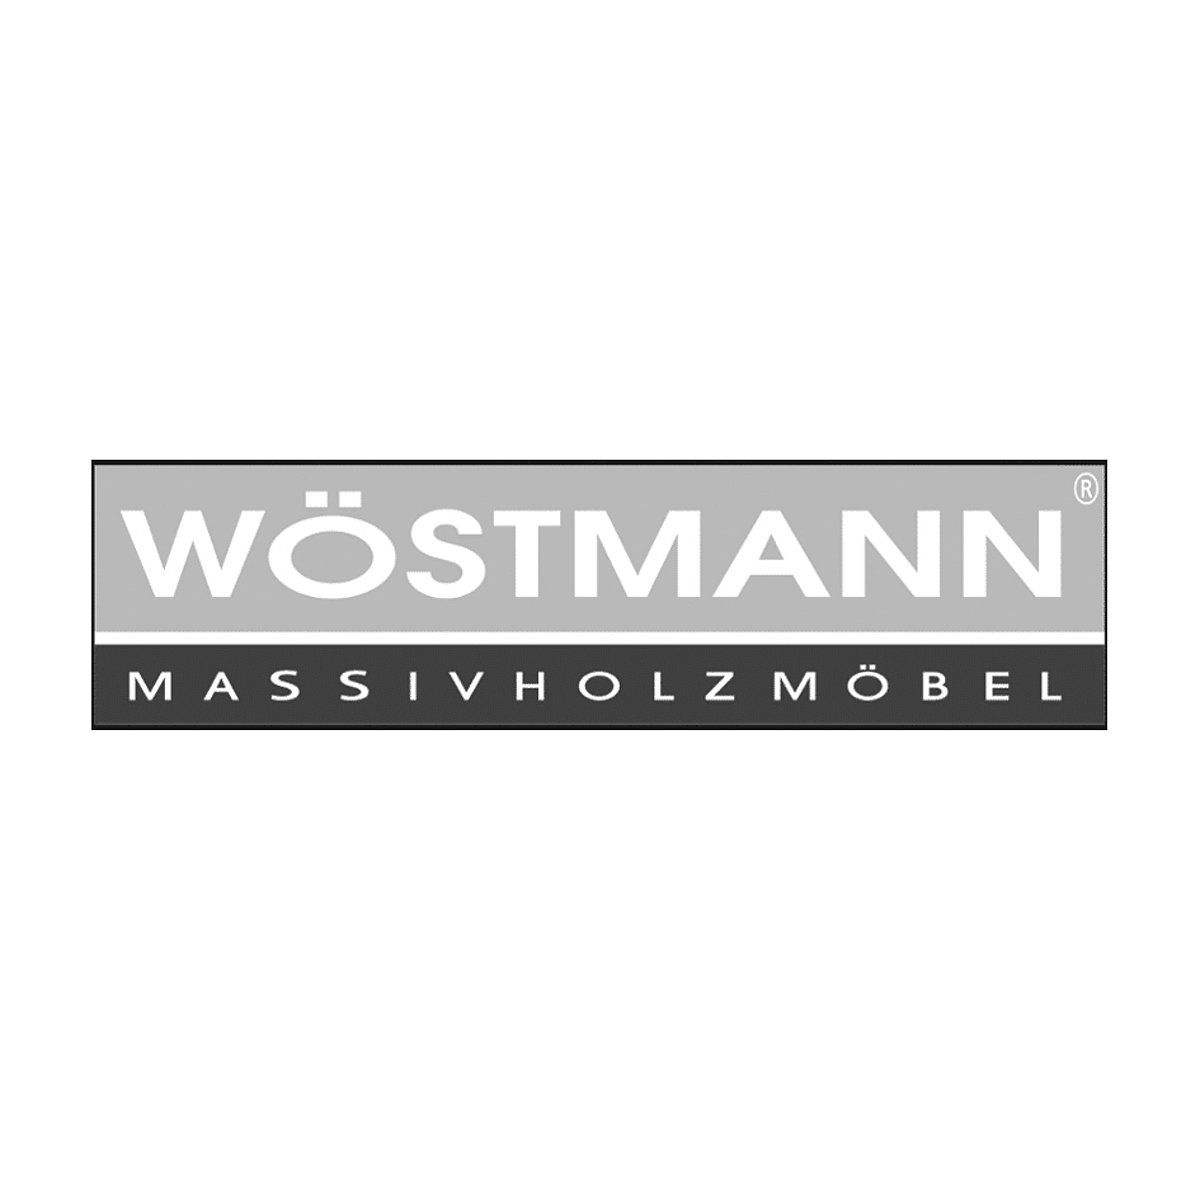 Wöstmann Logo schwarz weiß